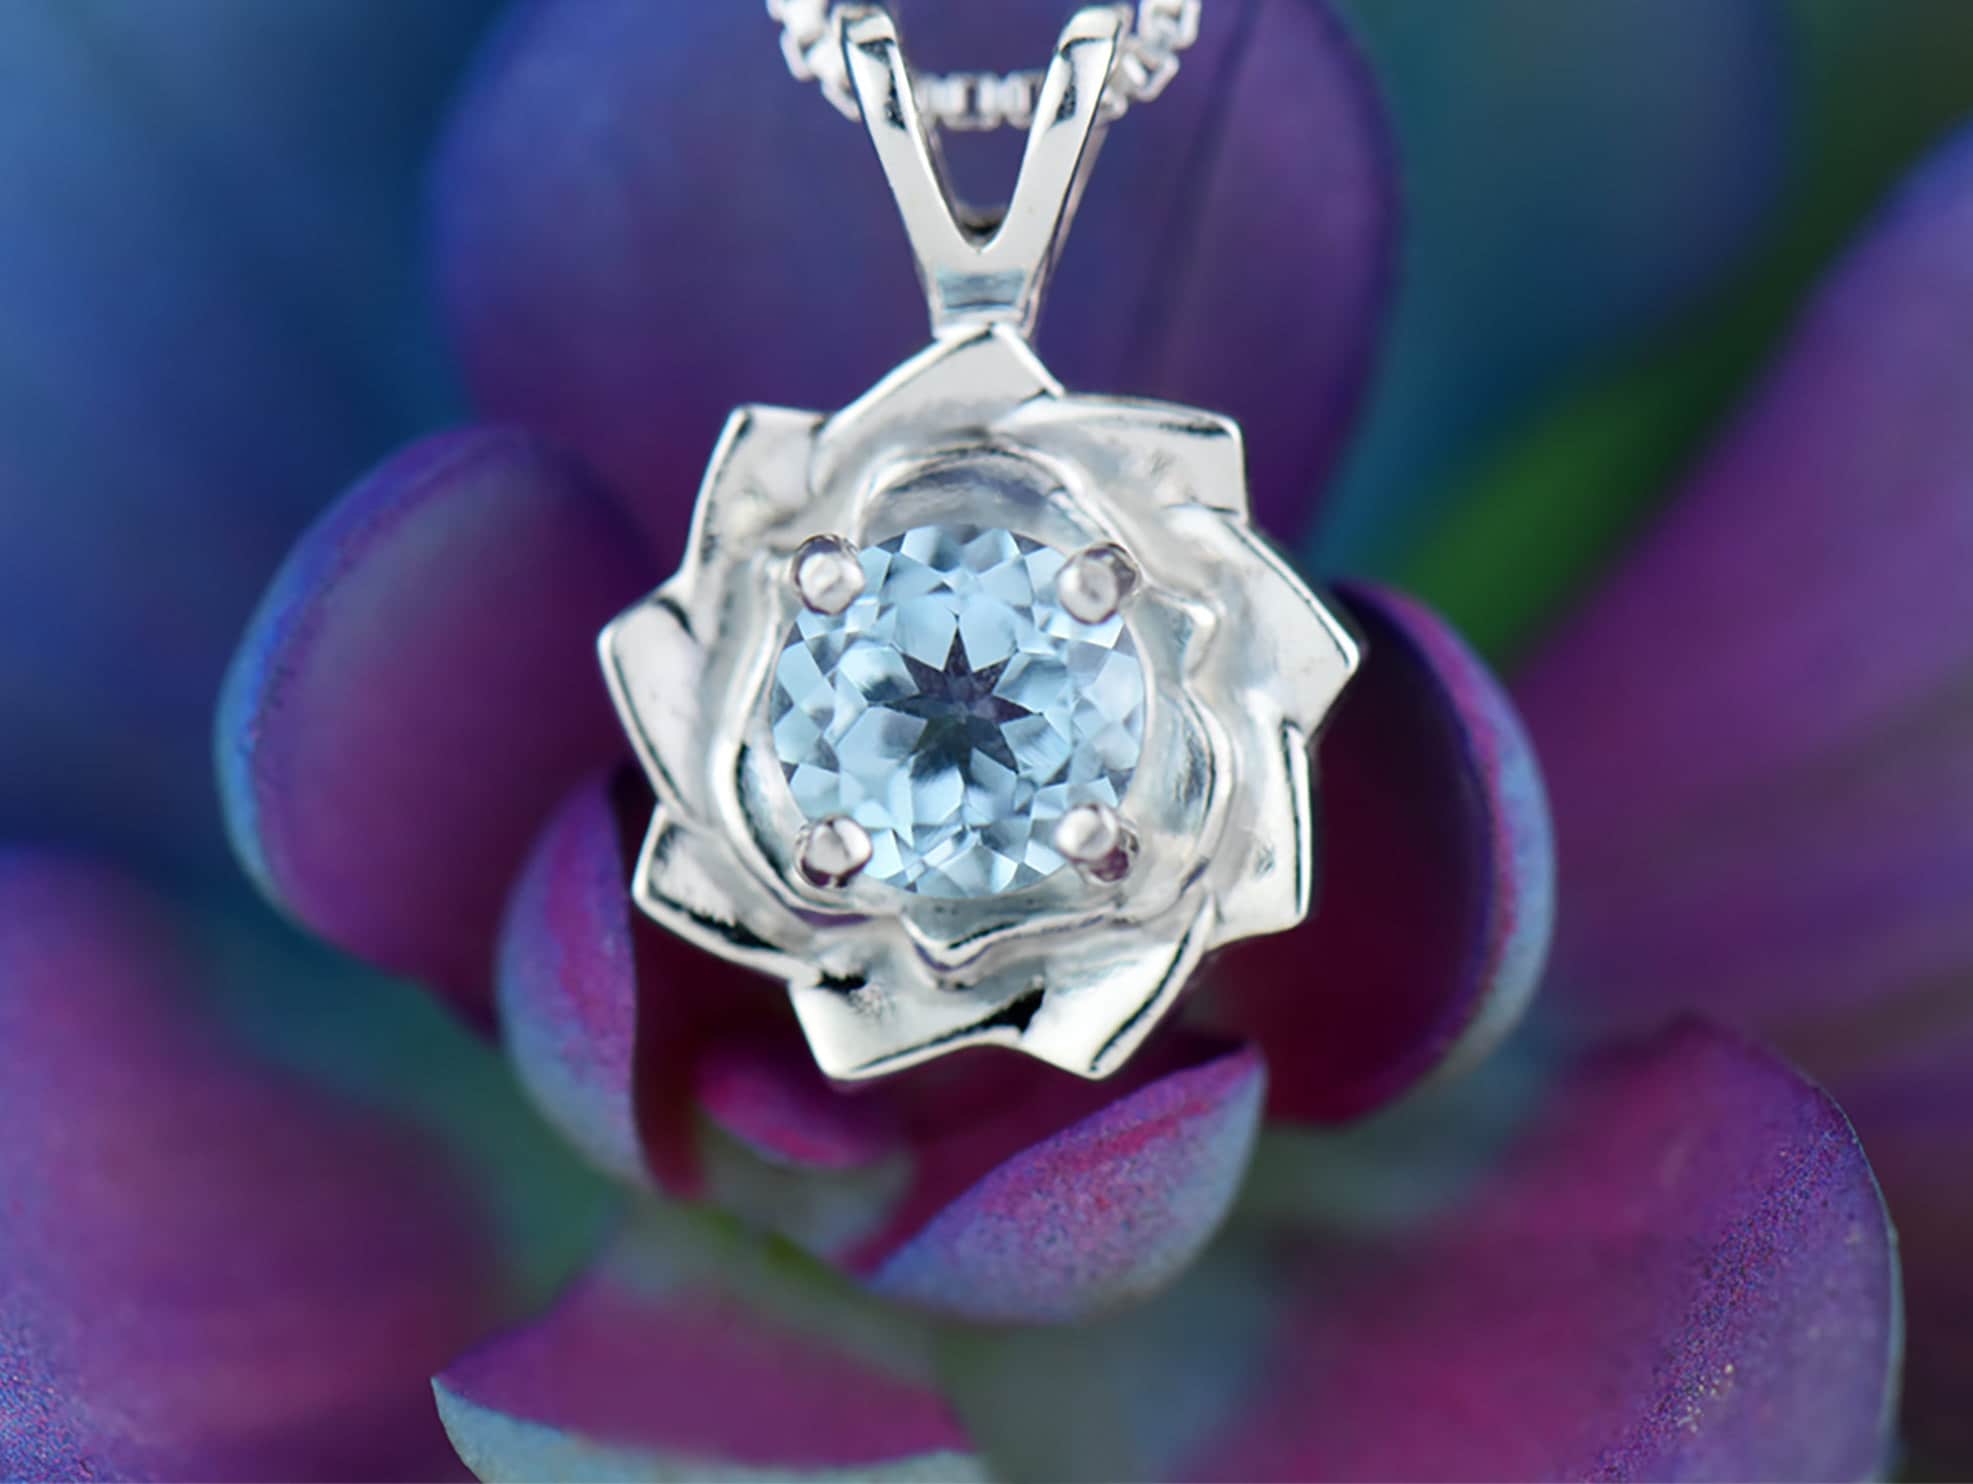 Daisy Chain Necklace | of Rare Origin Jewelry | Sorrel Sky